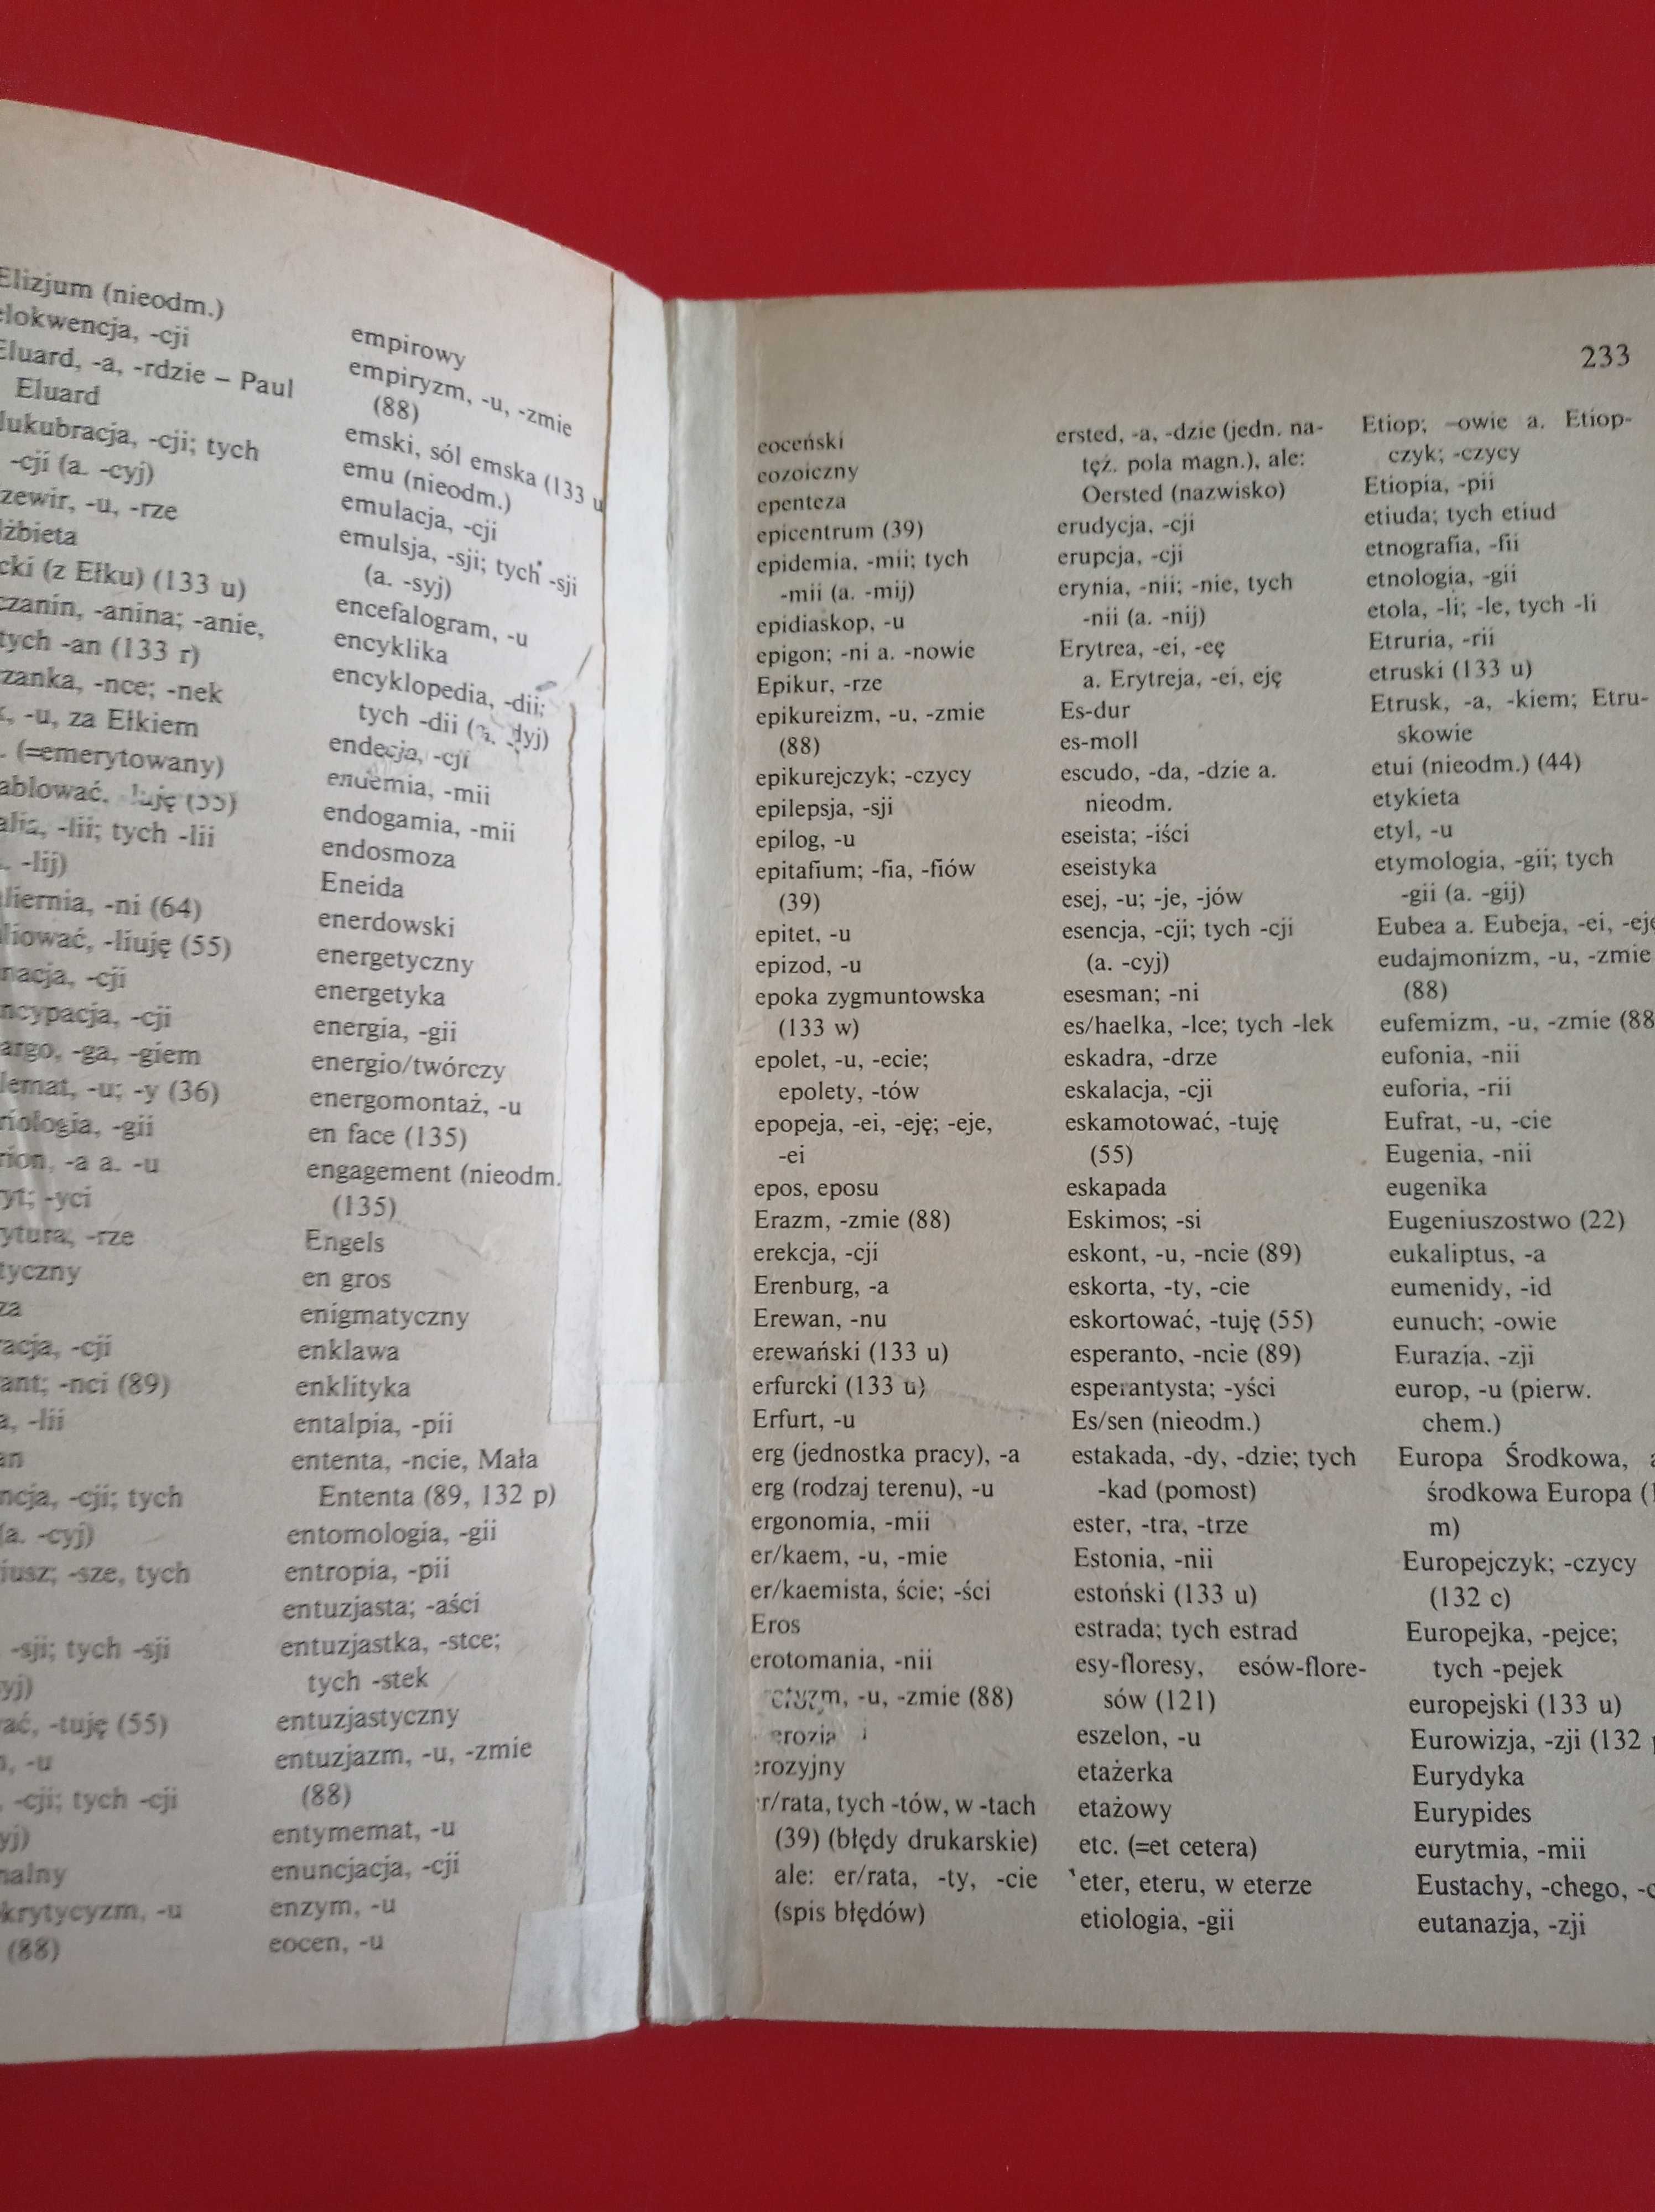 Zasady pisowni polskiej i interpunkcji, Jodłowski, Taszycki, 1986